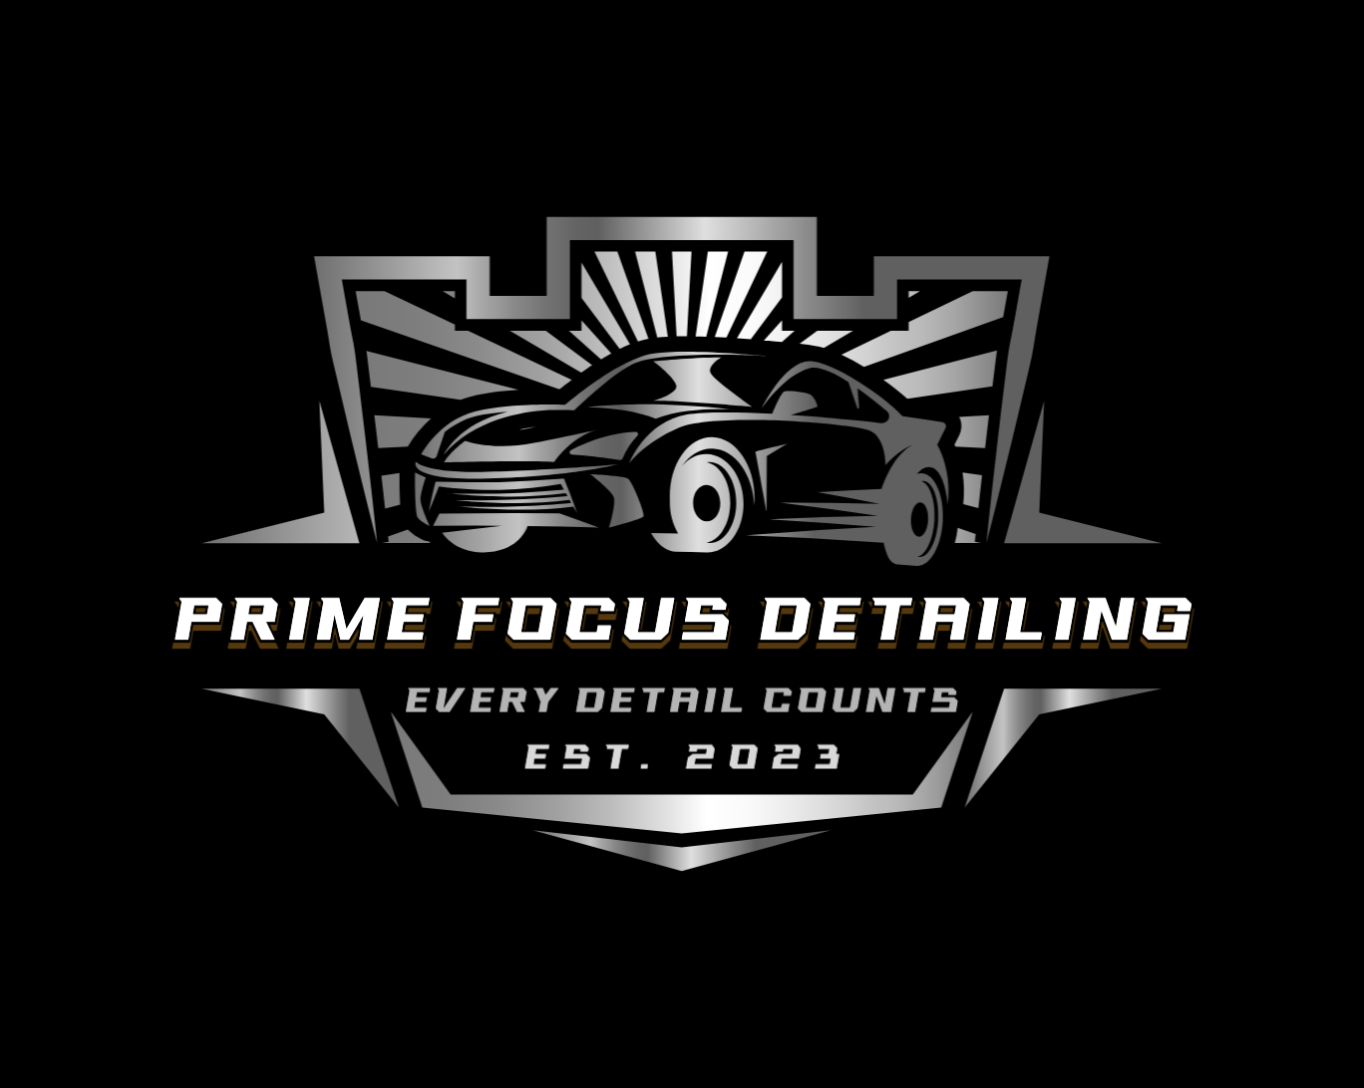 Prime Focus Detailing